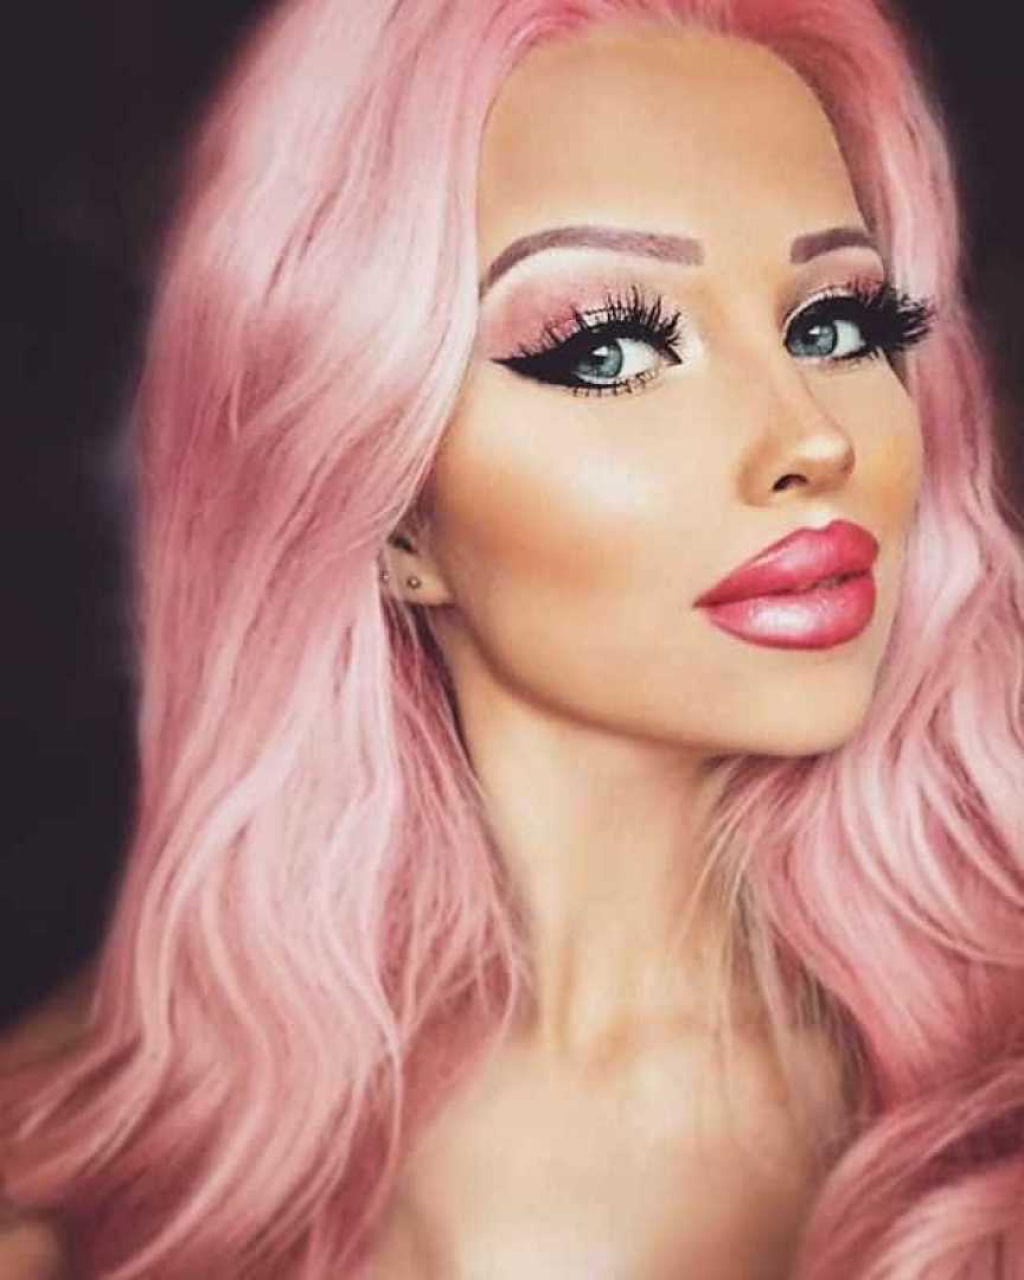 Jovem boneca humana torra o dinheiro dos pais a cada mês para se parecer com a Barbie 19